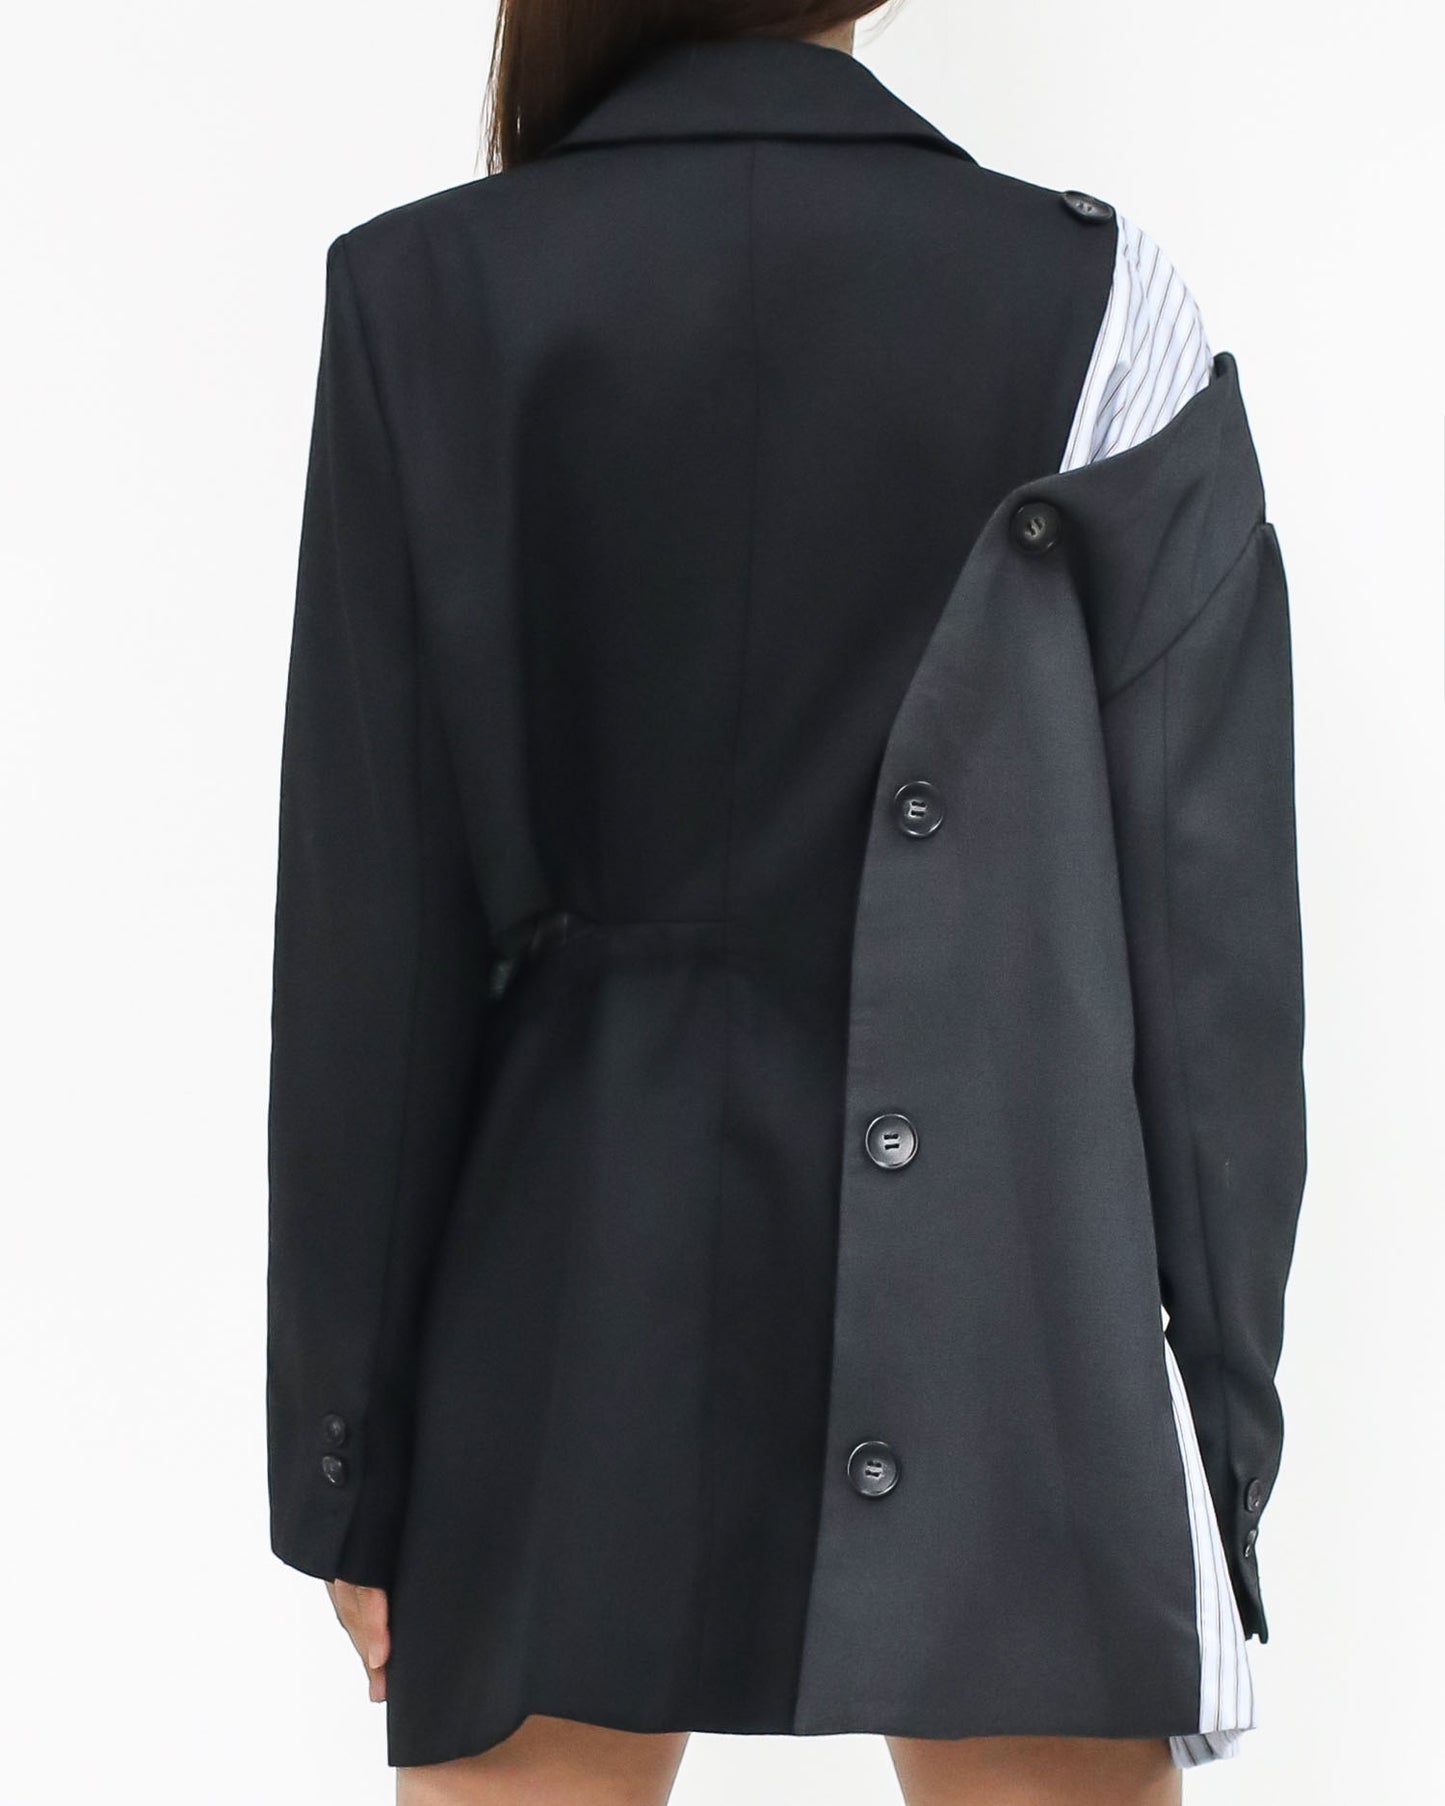 黑色和灰色配藍色條紋襯衫撞色西裝外套*預購*